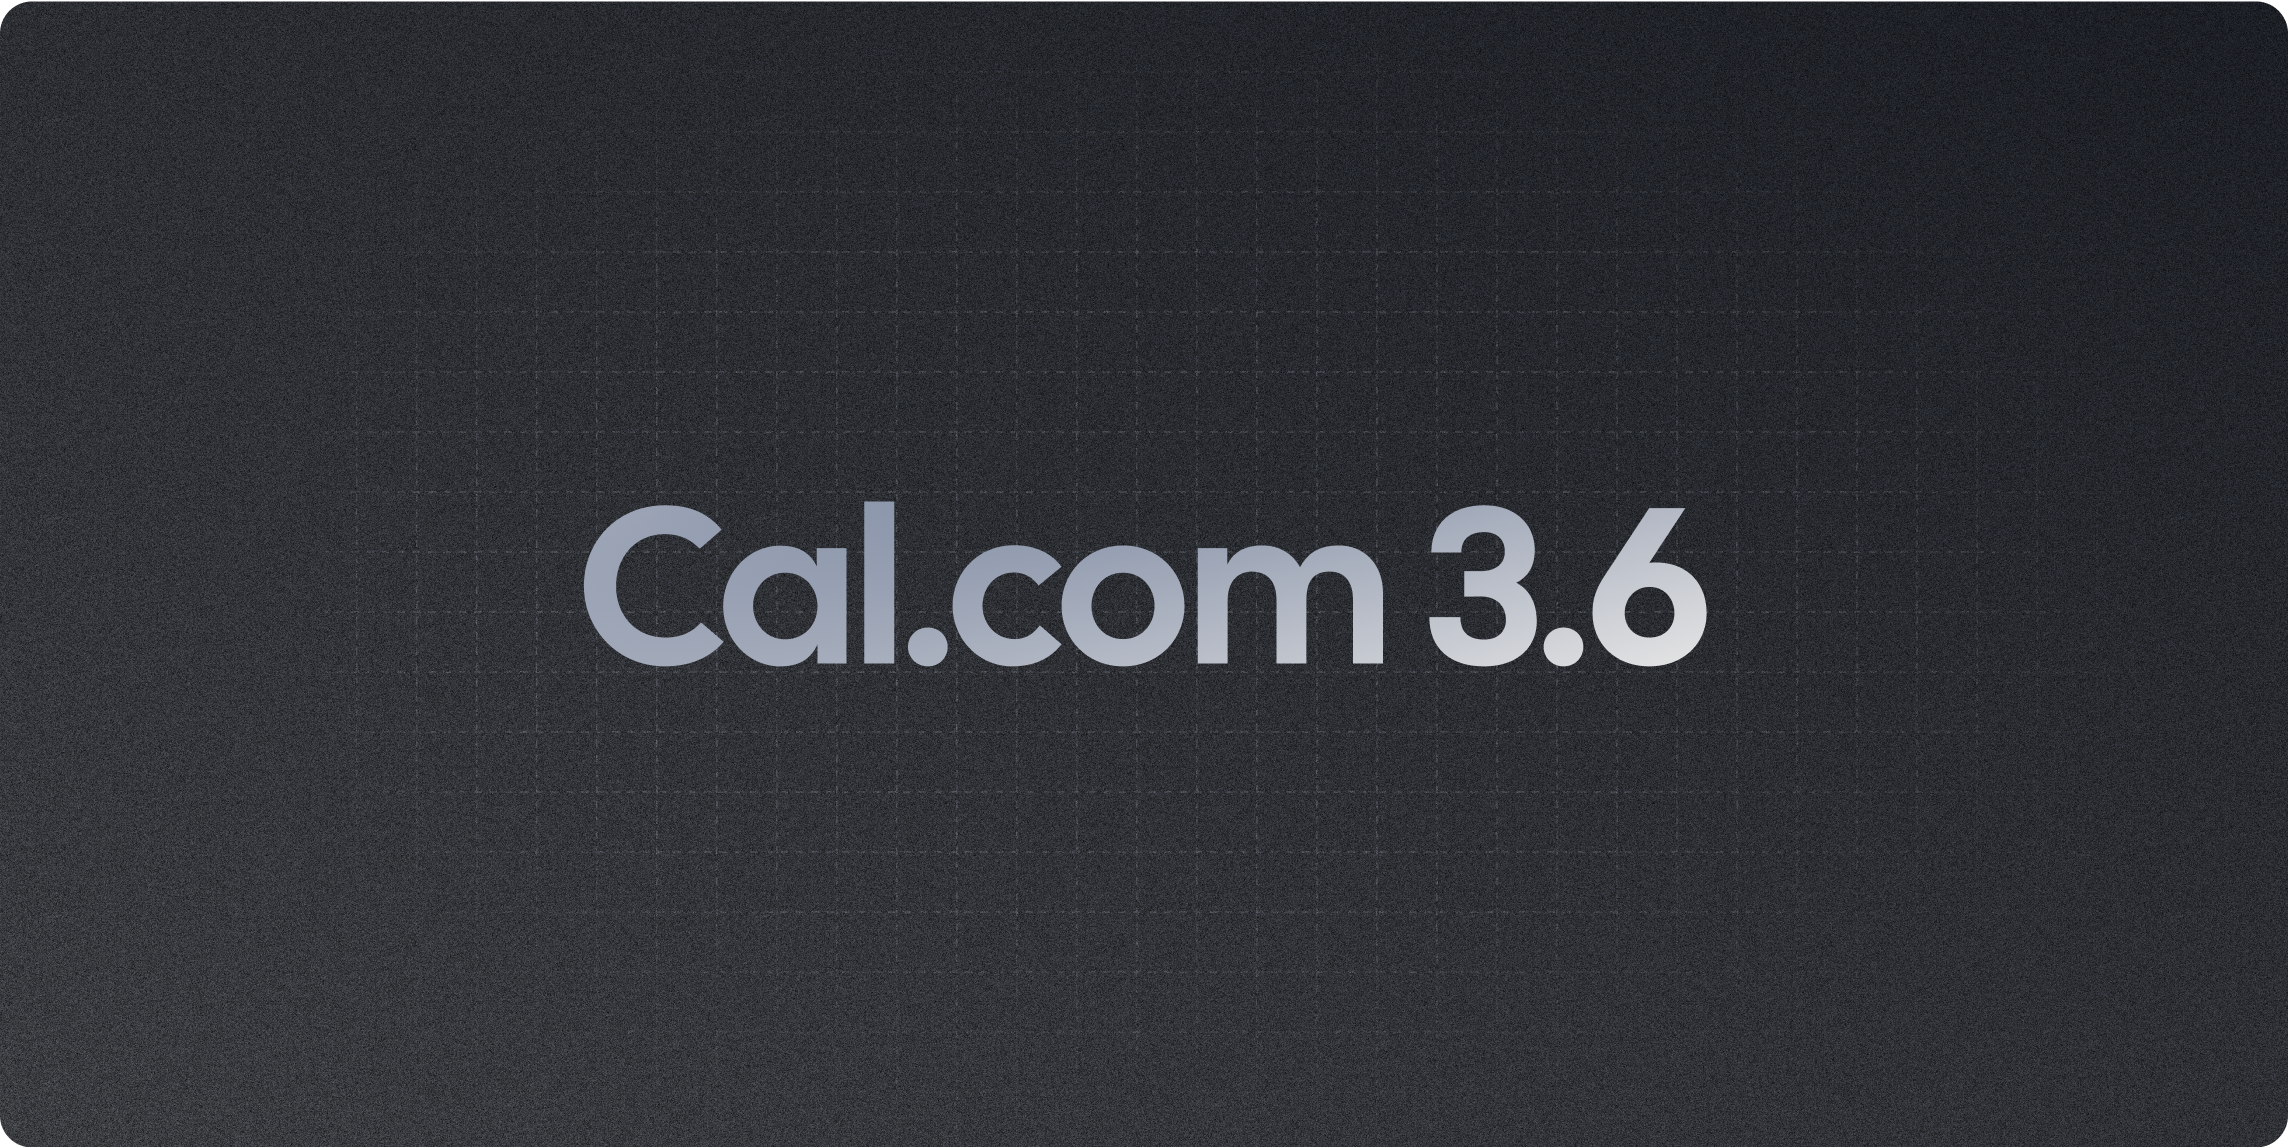 Cal.com v3.6